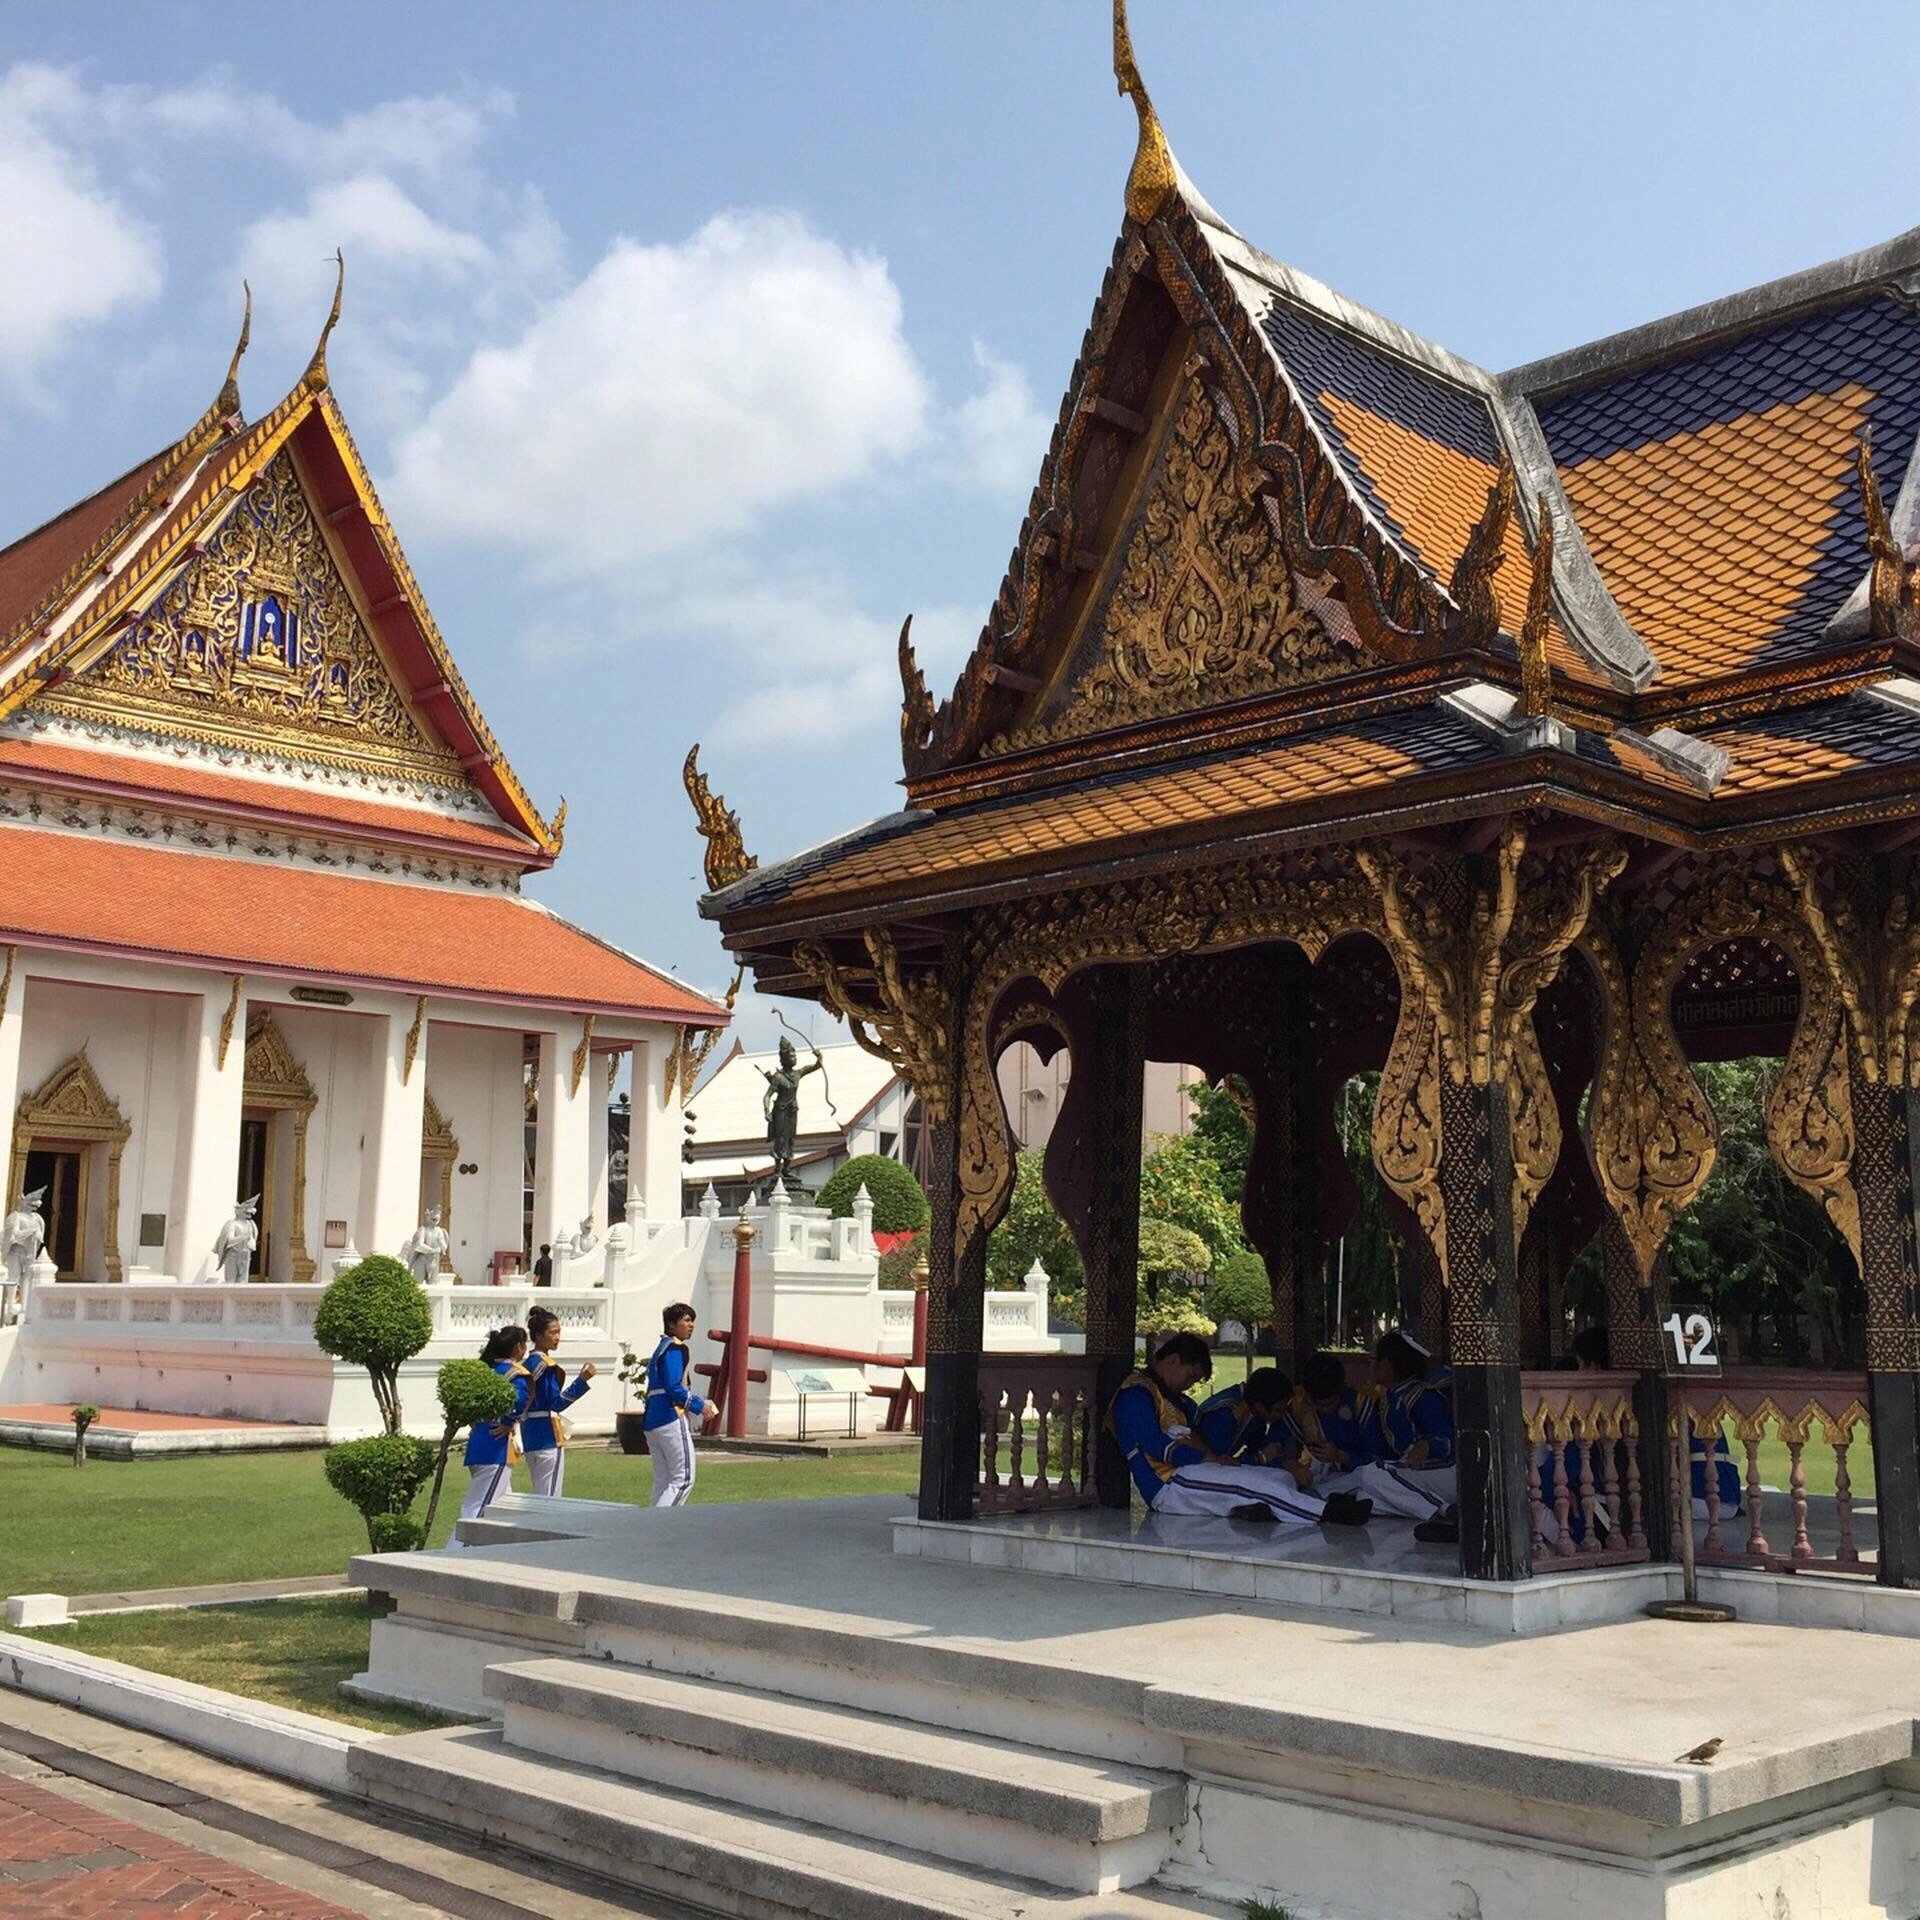 郑王庙是是曼谷旅游必大咖的景点。郑王庙又称为黎明寺